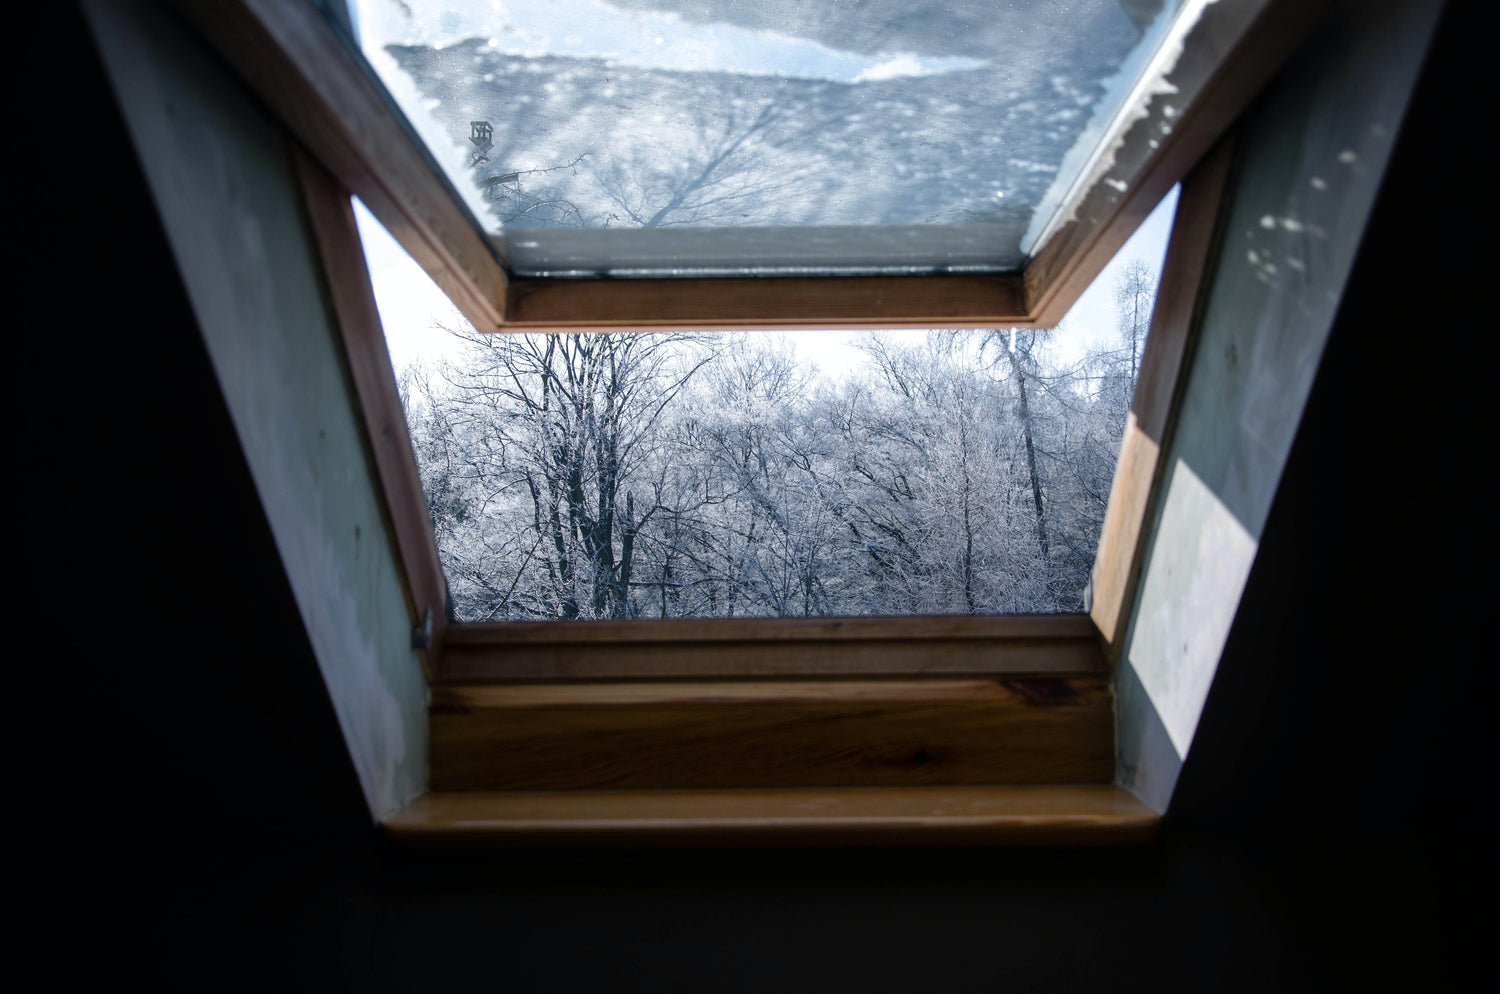 An open window in winter time